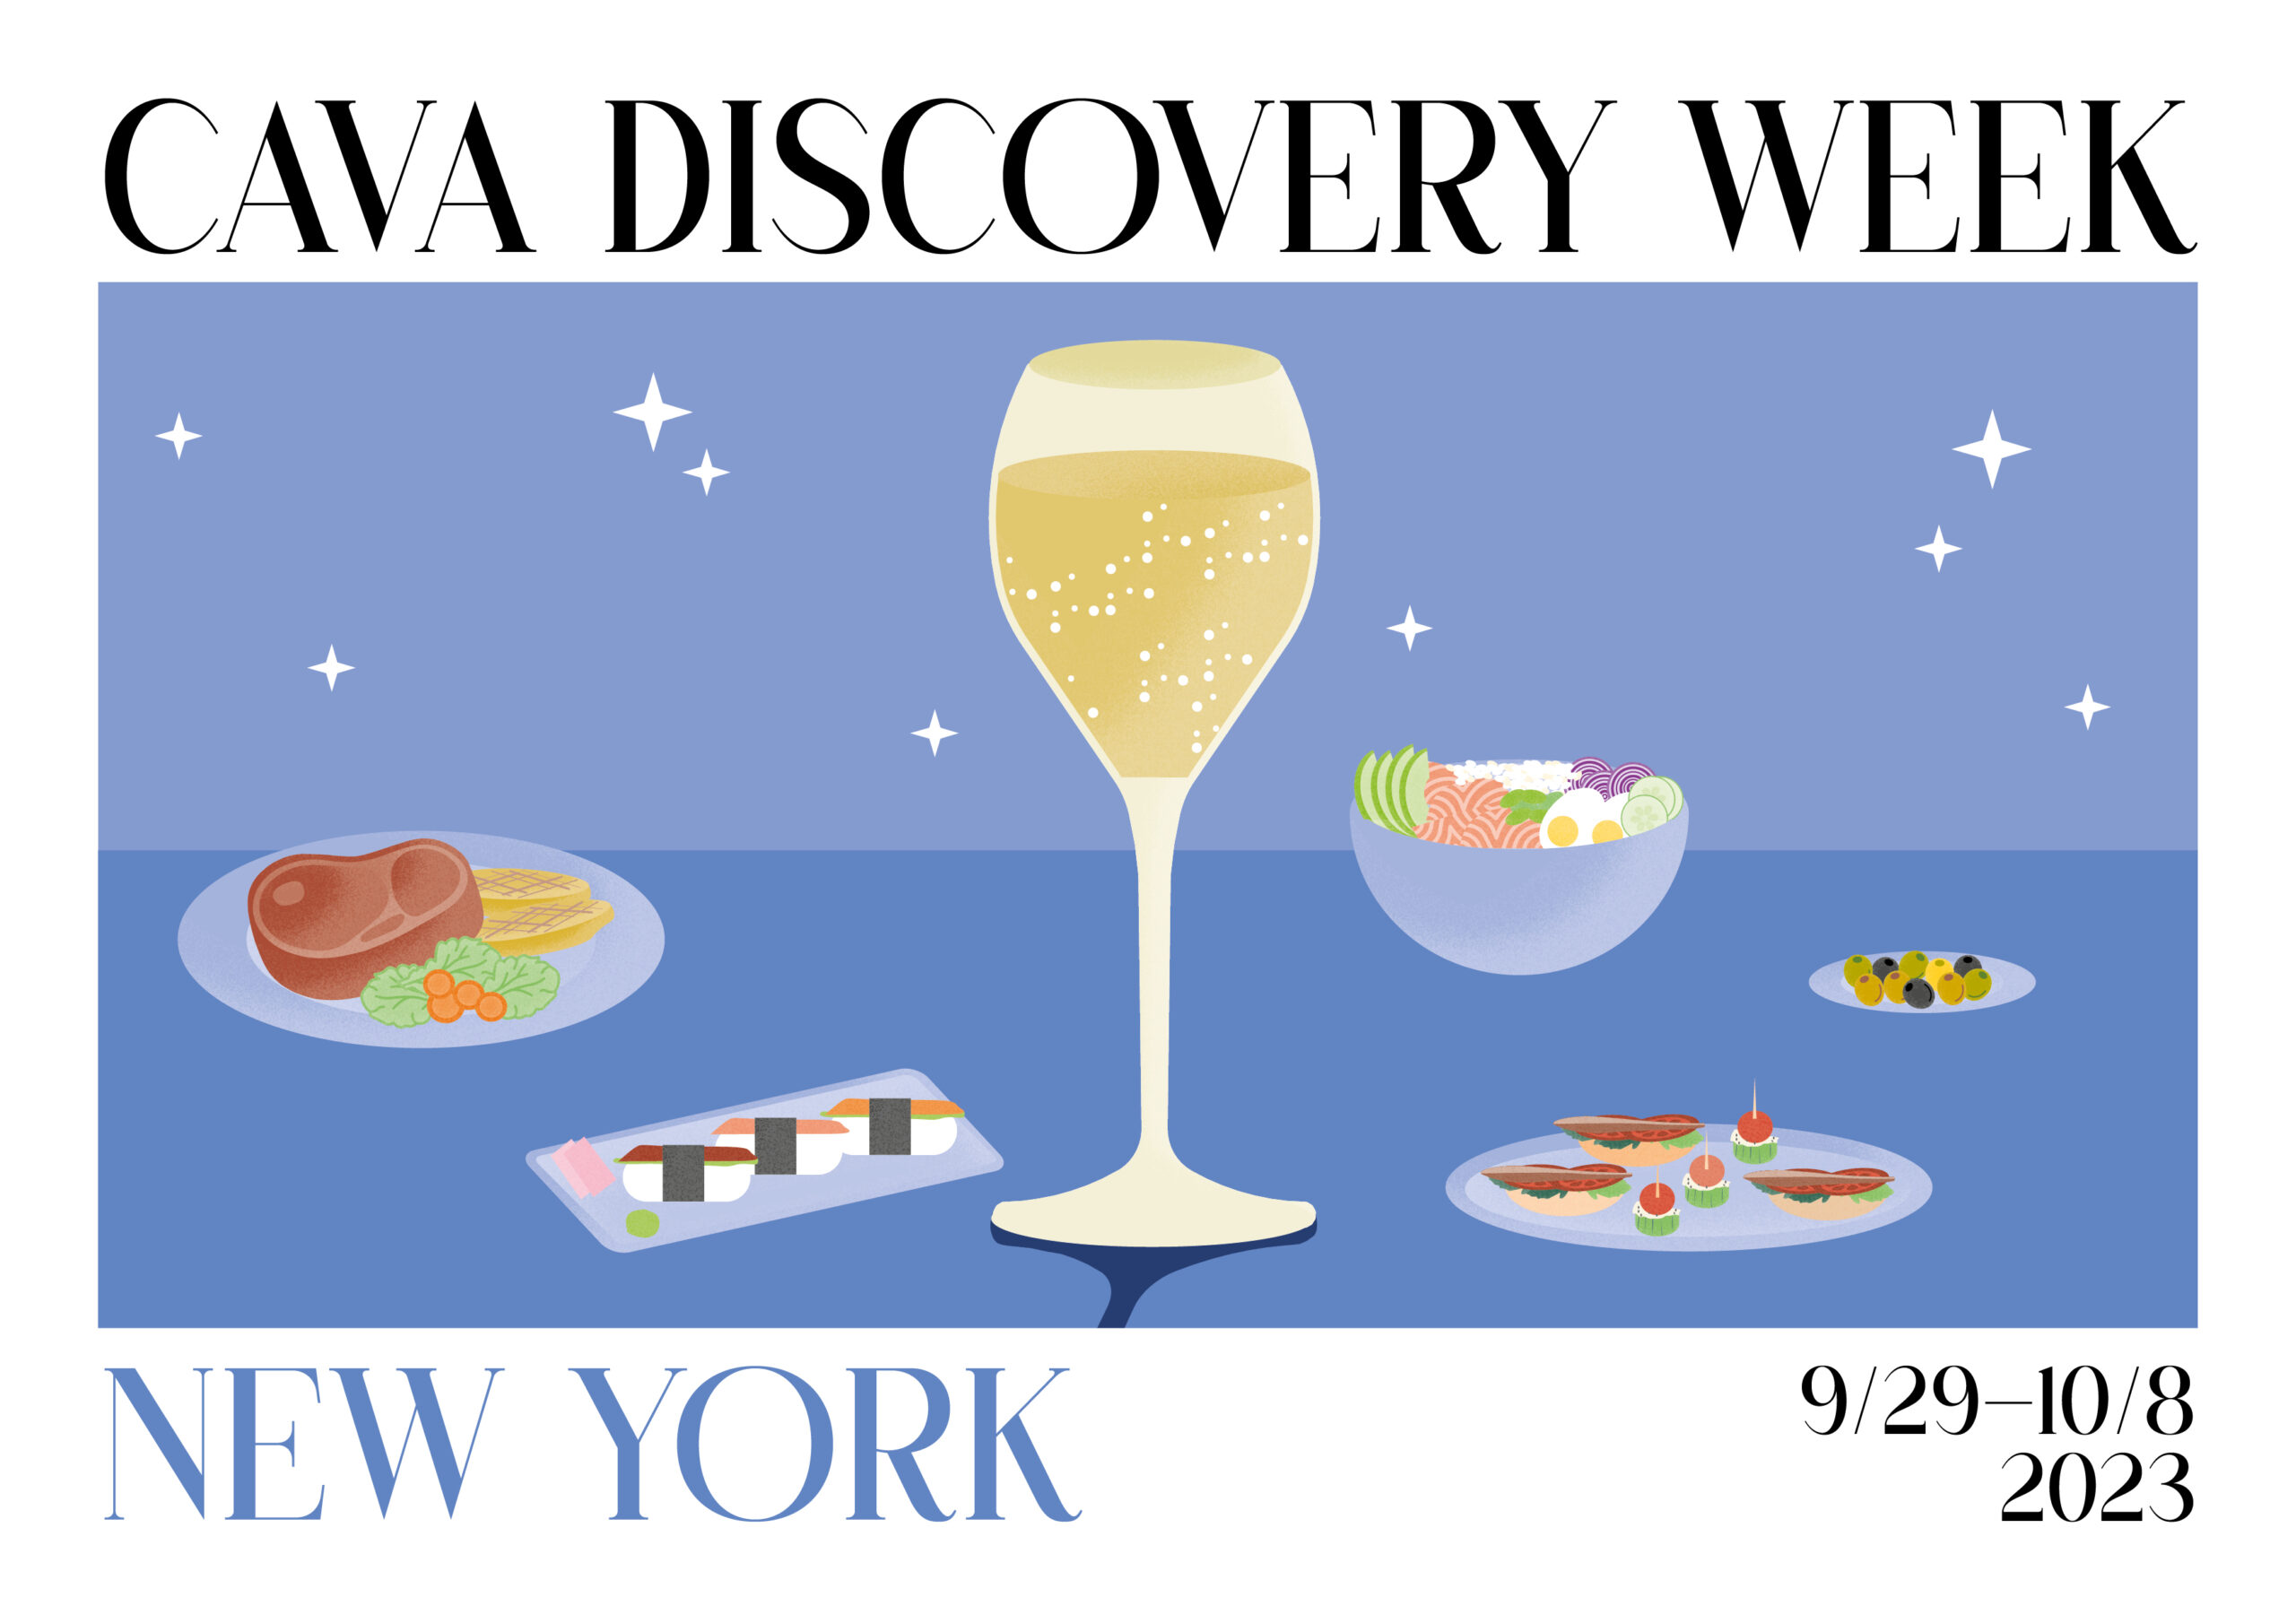 Cava Discovery Week NYC celebra el vino espumoso emblemático de España